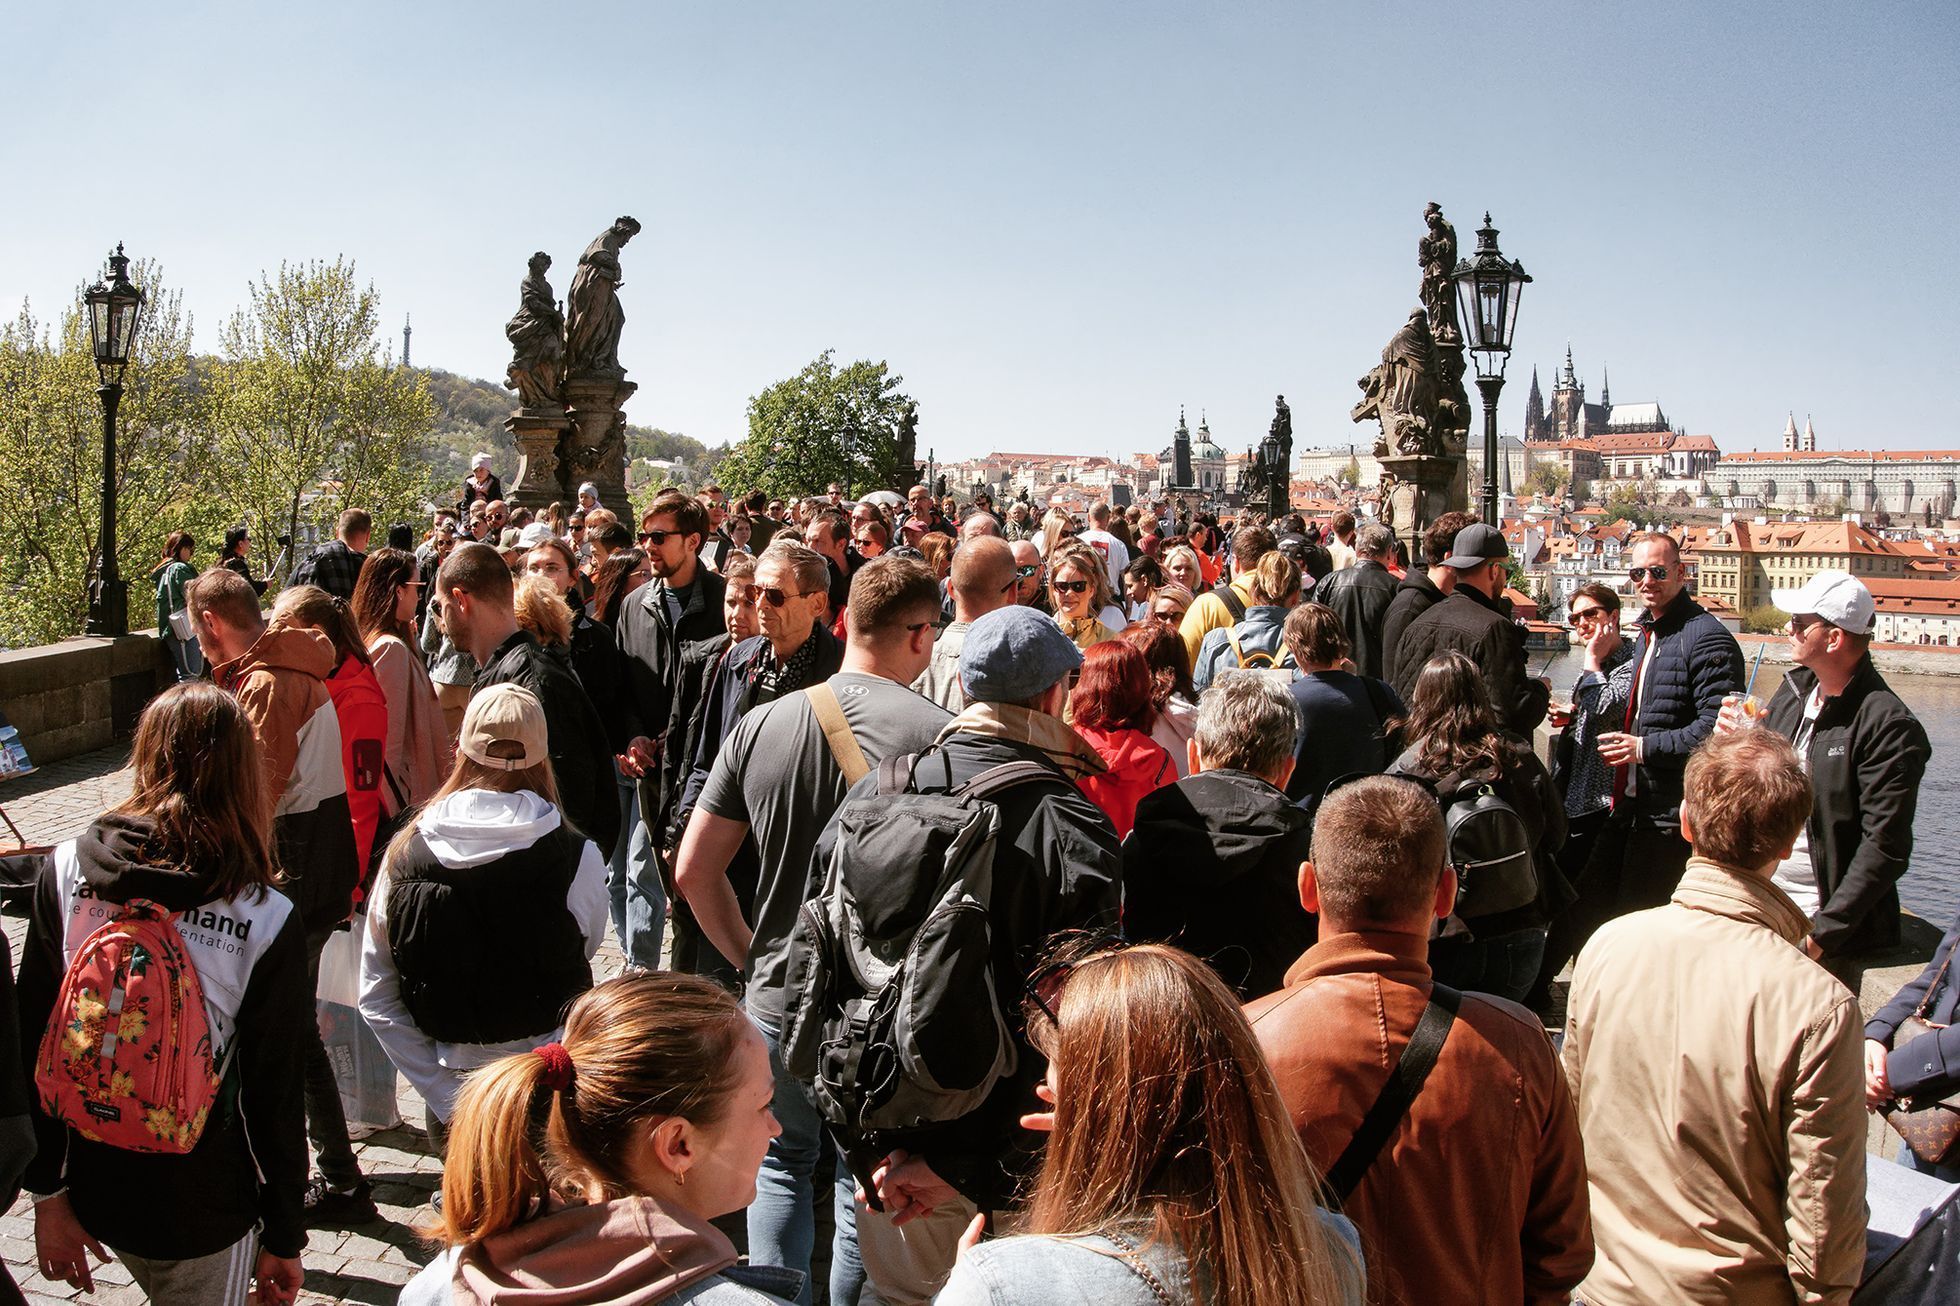 Návrat turistů, Praha, doba po pandemii, turismus, turisté